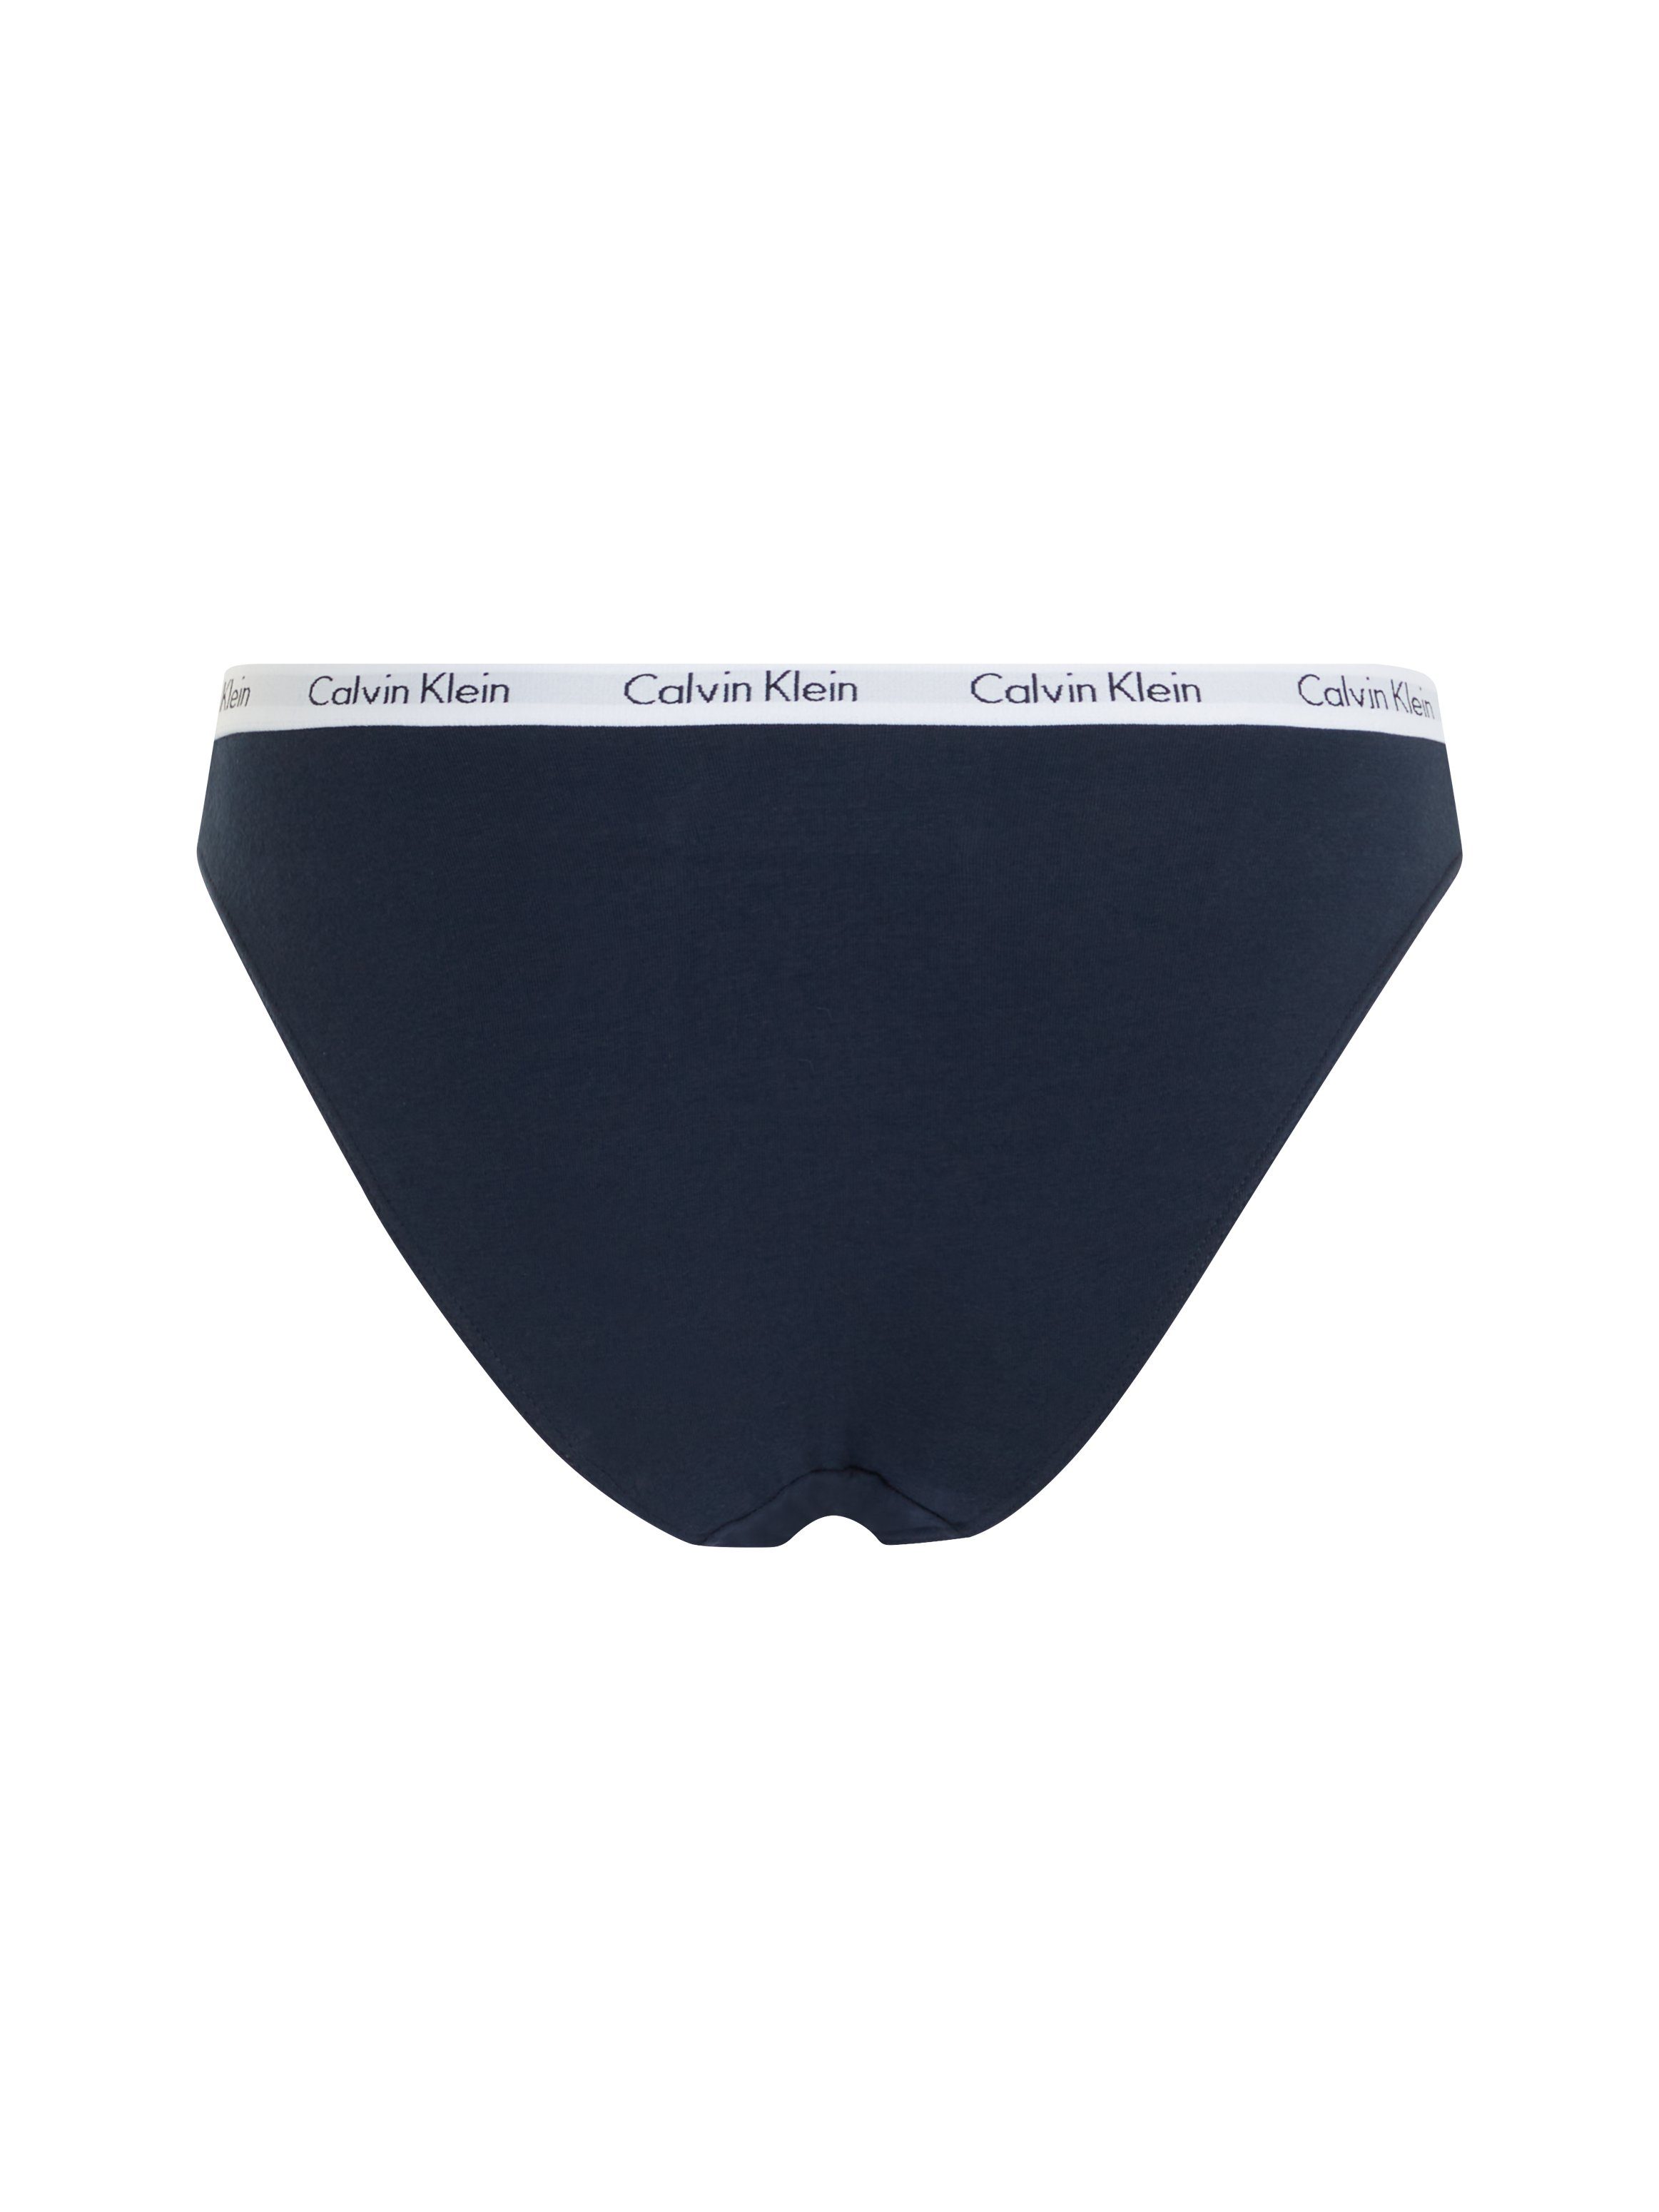 Klein Underwear Calvin mit Bikinislip Logobund dunkelblau